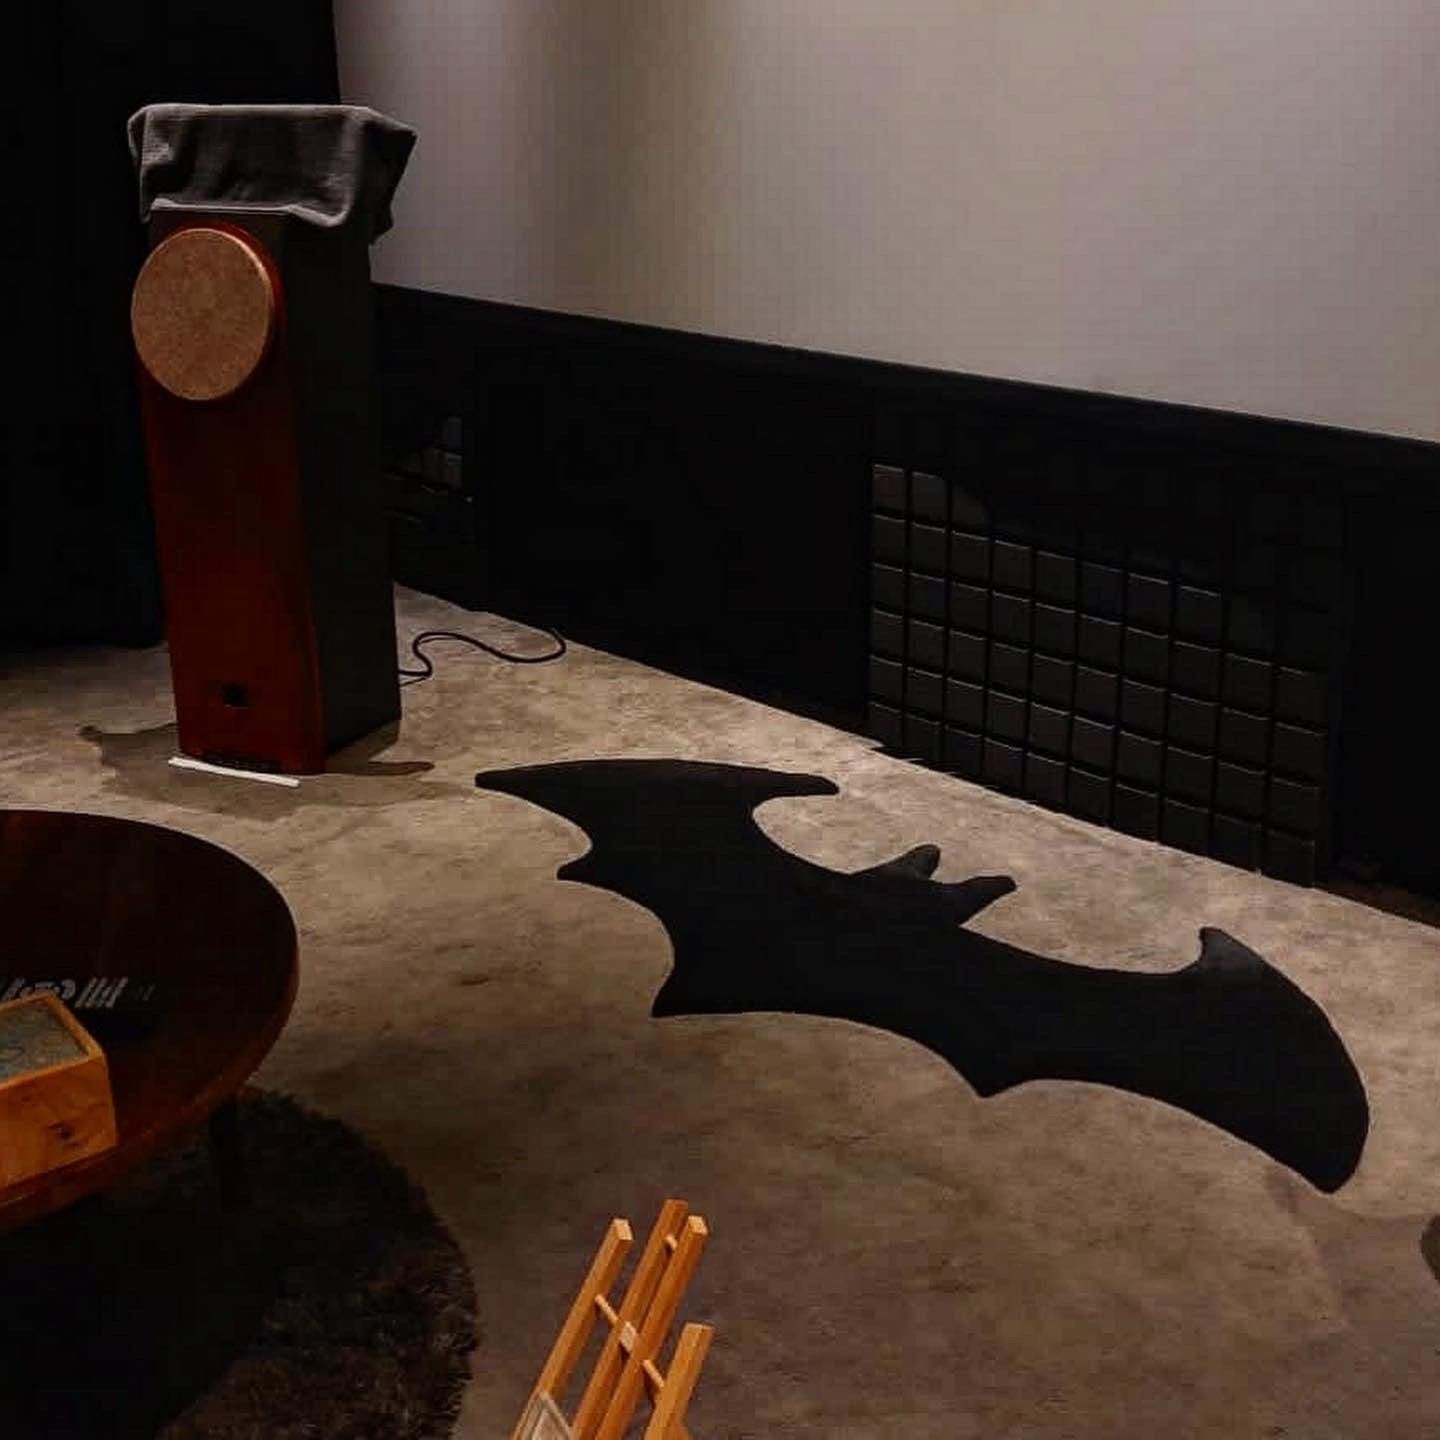 Batman Rug in Dark Auditorium